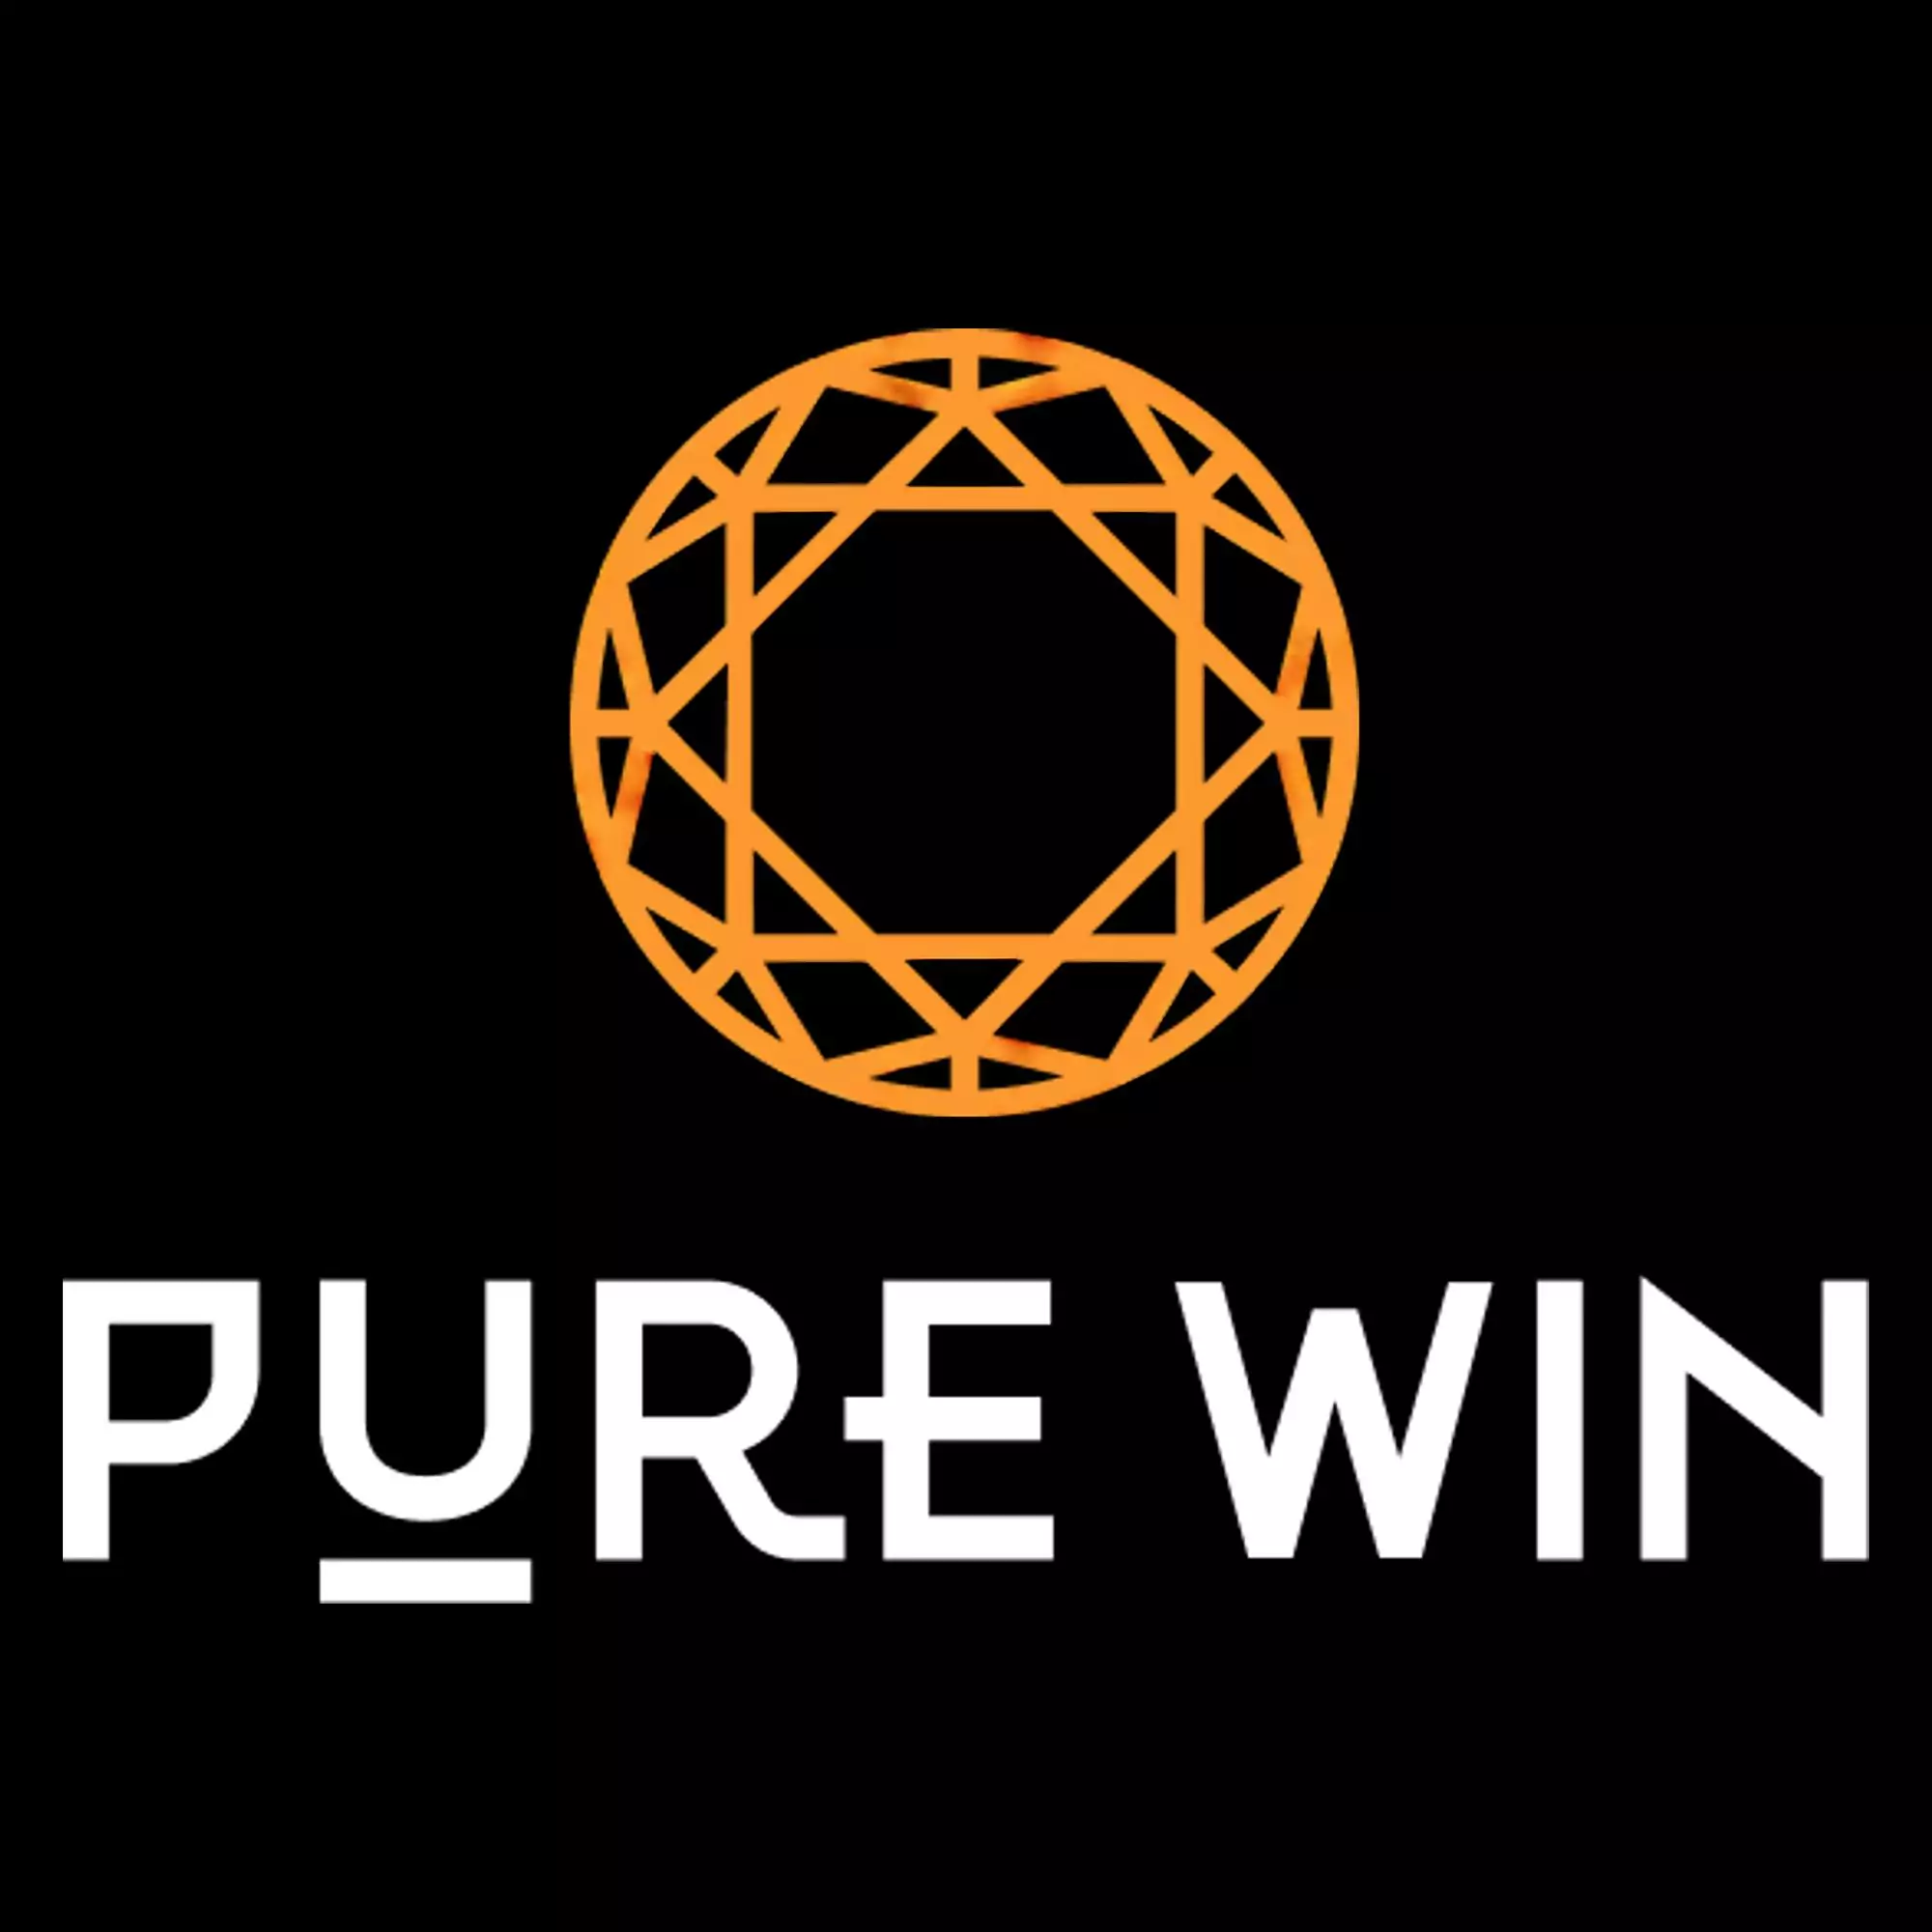 भारतीय उपयोगकर्ताओं के लिए Pure Win की हमारी वीडियो समीक्षा देखें।